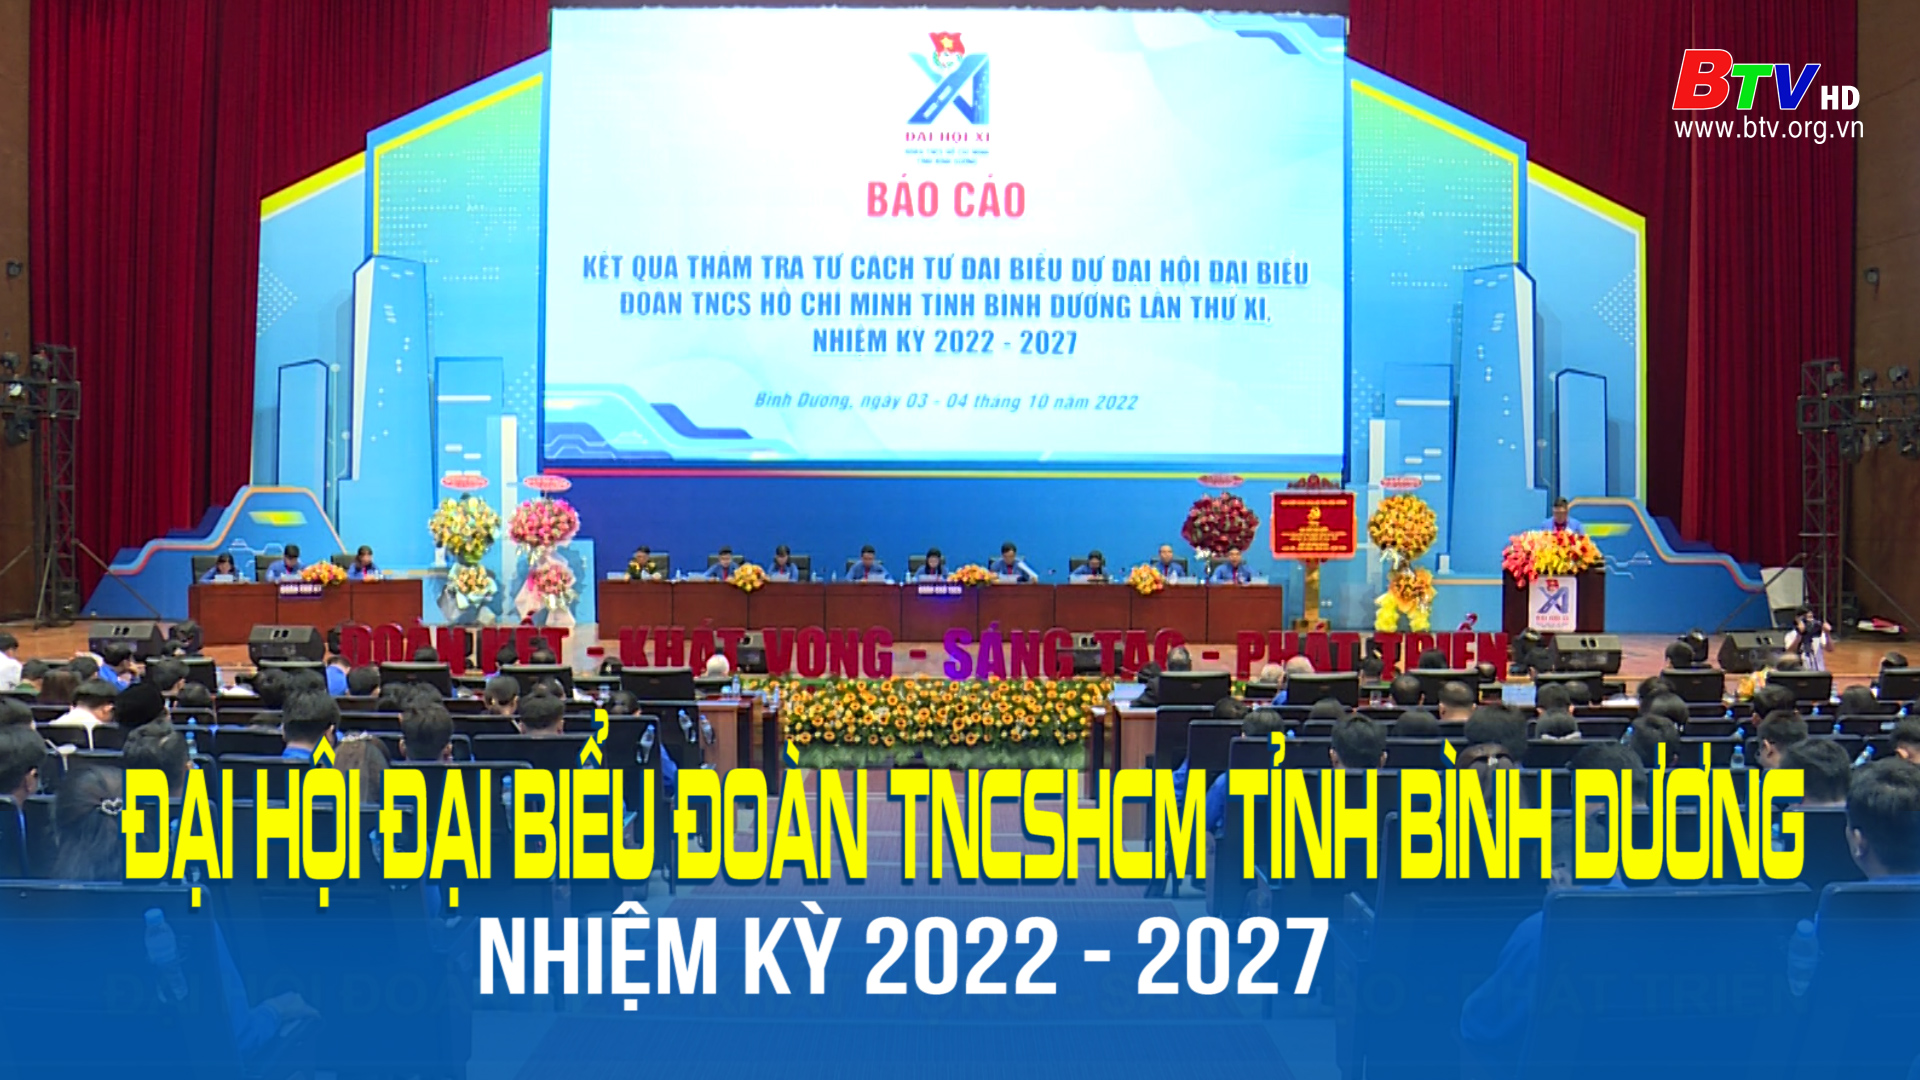 Đại hội Đại biểu Đoàn TNCSHCM tỉnh Bình Dương nhiệm kỳ 2022 - 2027